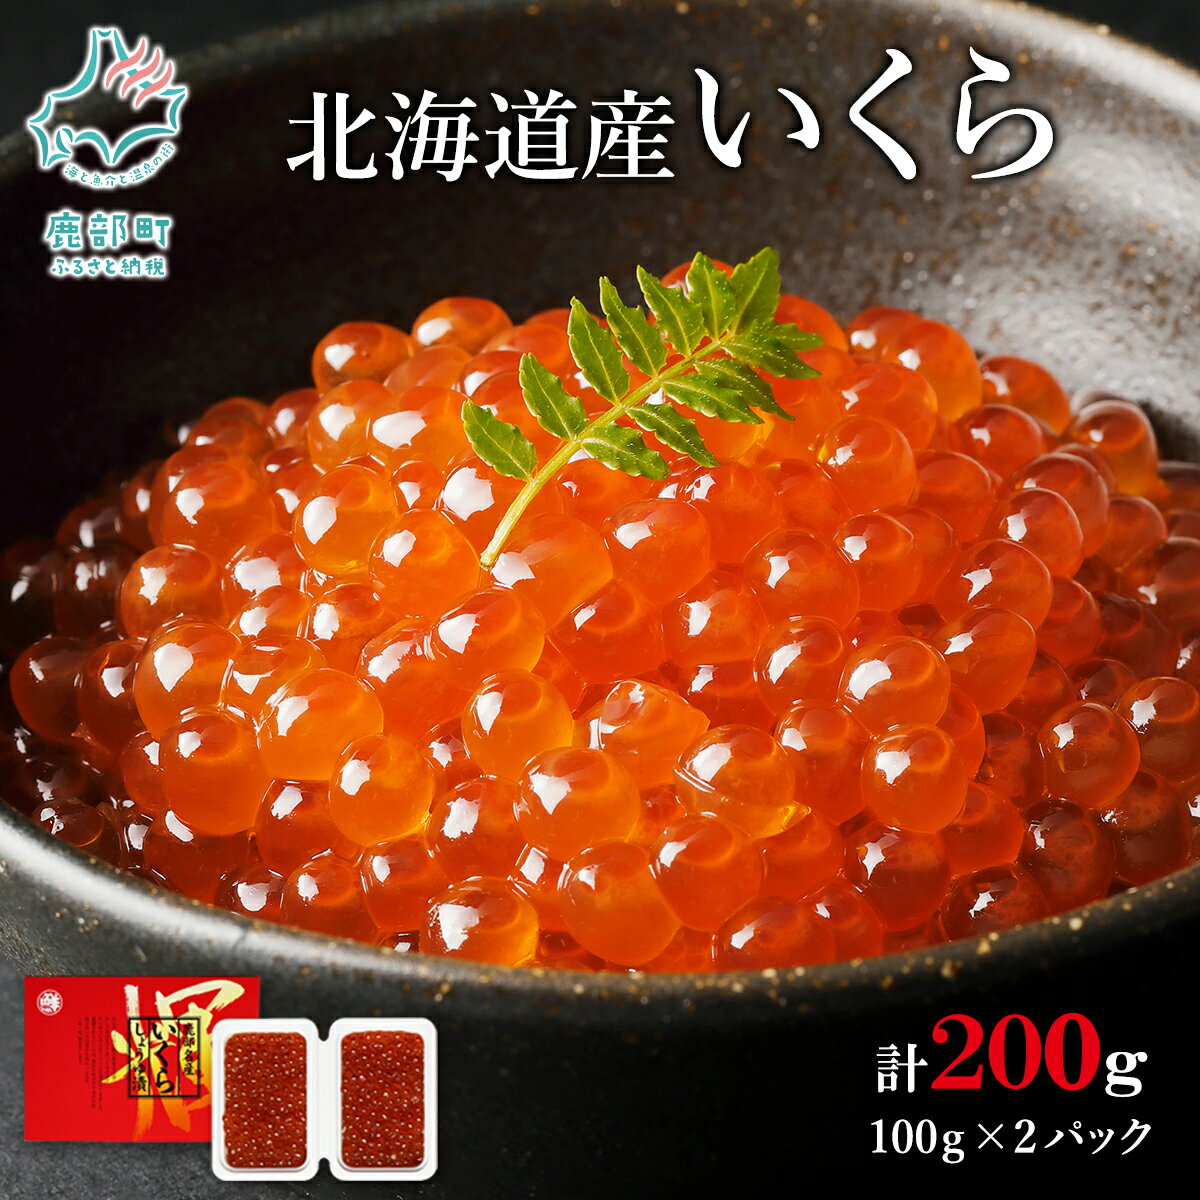 いくら 北海道産 鮭 いくら 醤油漬け 100g×2 計 200g 丸鮮道場水産 小分け 魚卵 海産物 食べきり いくら丼 手巻き寿司 ごはんのお供 送料無料